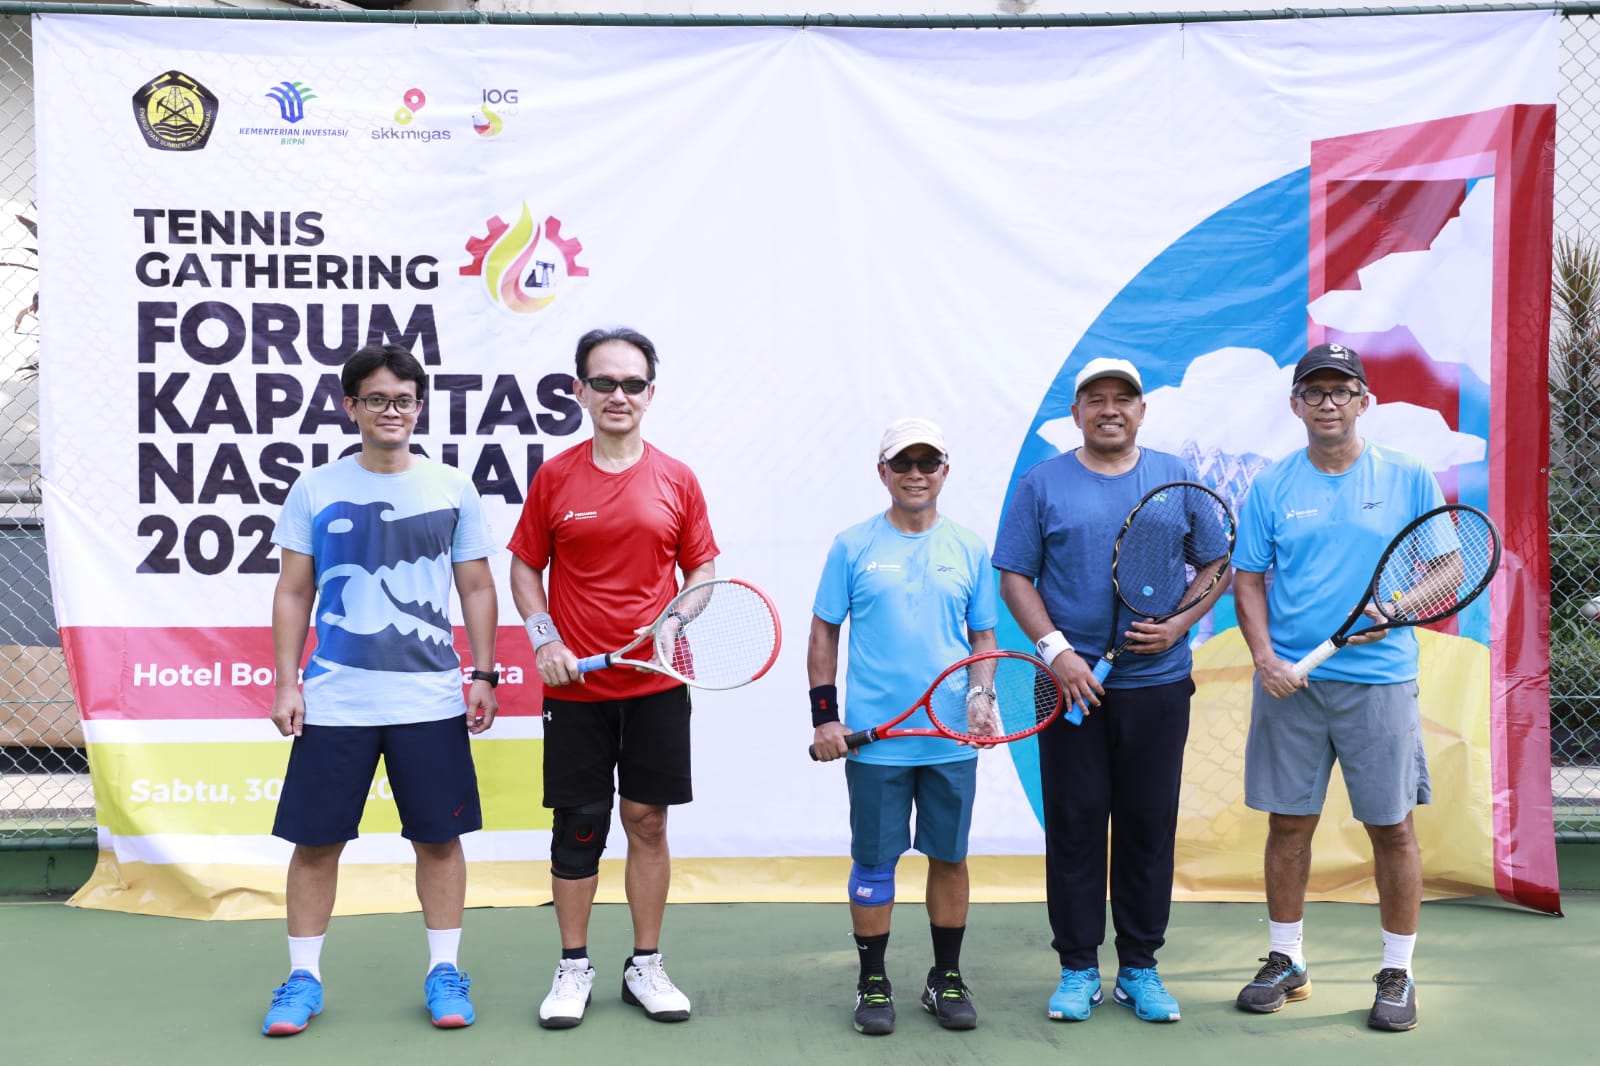 Jalin silaturahmi, Bupati Siak dan Kepala SKK Migas Laksanakan Pertandingan Tenis Gathering